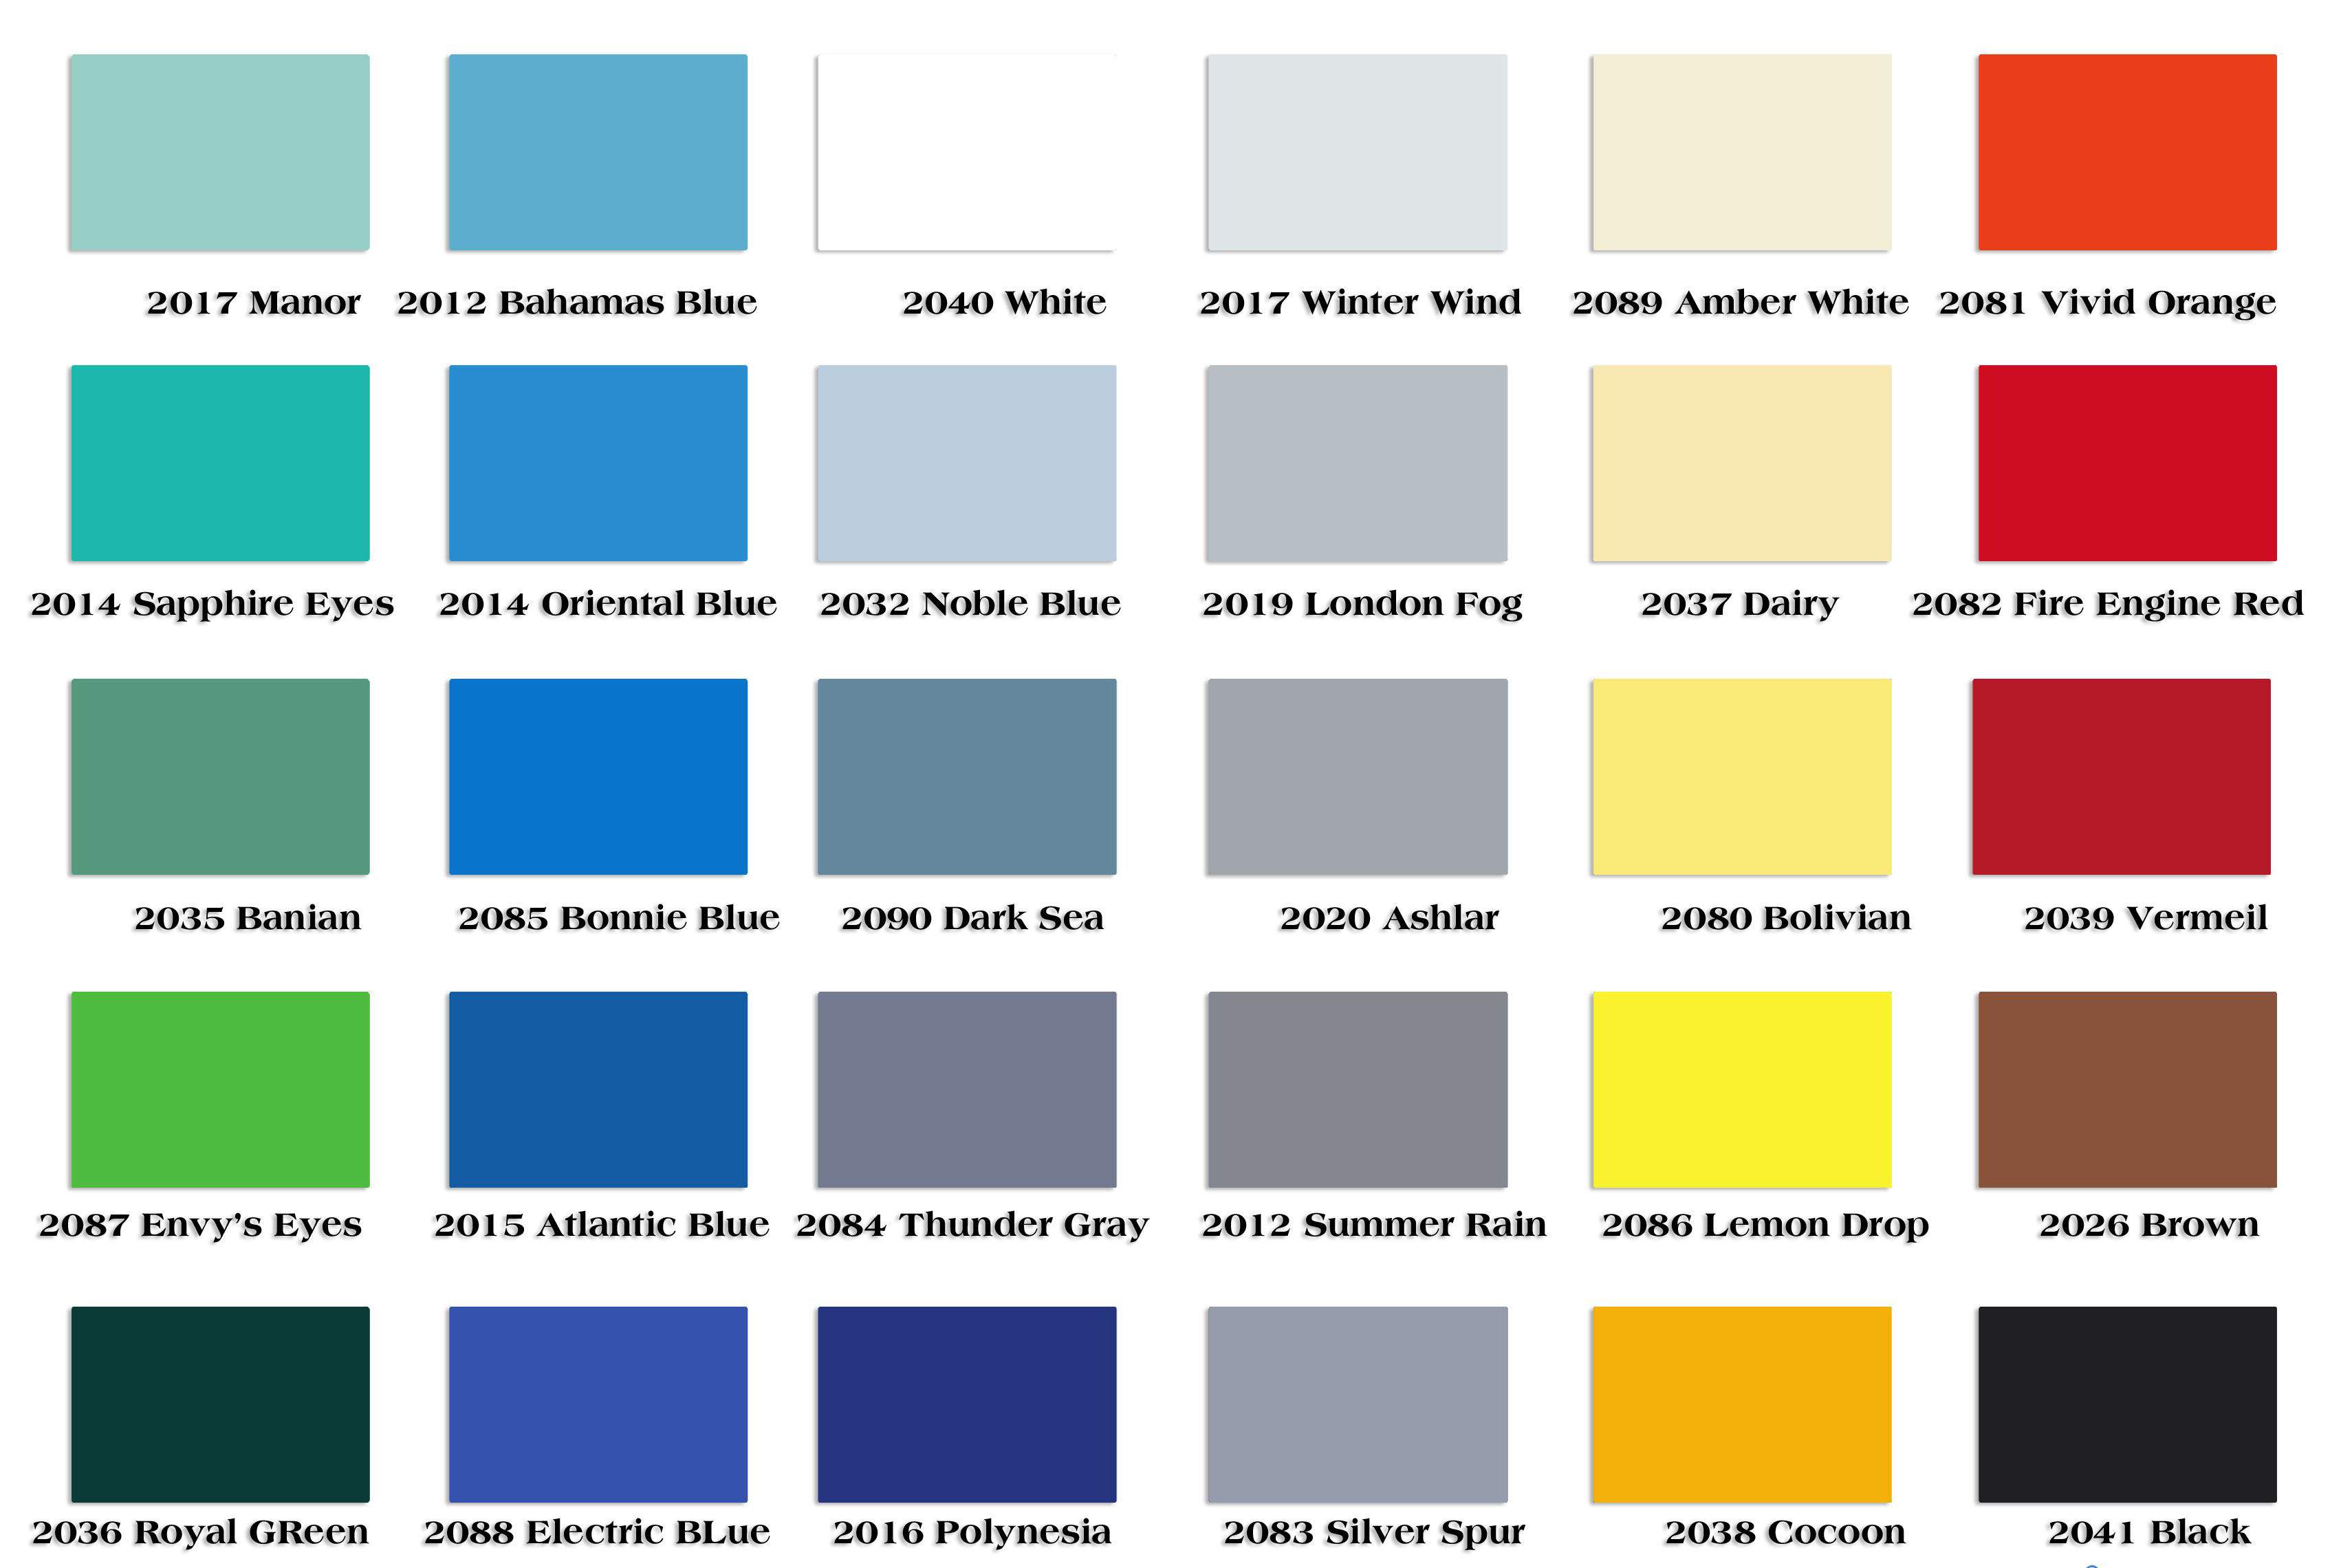 Bảng màu sơn Joton Jony đa dạng và phong phú, giúp bạn dễ dàng lựa chọn màu sắc phù hợp với phong cách trang trí của ngôi nhà mình. Từ những gam màu trầm ấm đến những màu sáng tươi mới, sơn Joton Jony có đủ để đáp ứng mọi nhu cầu của bạn.